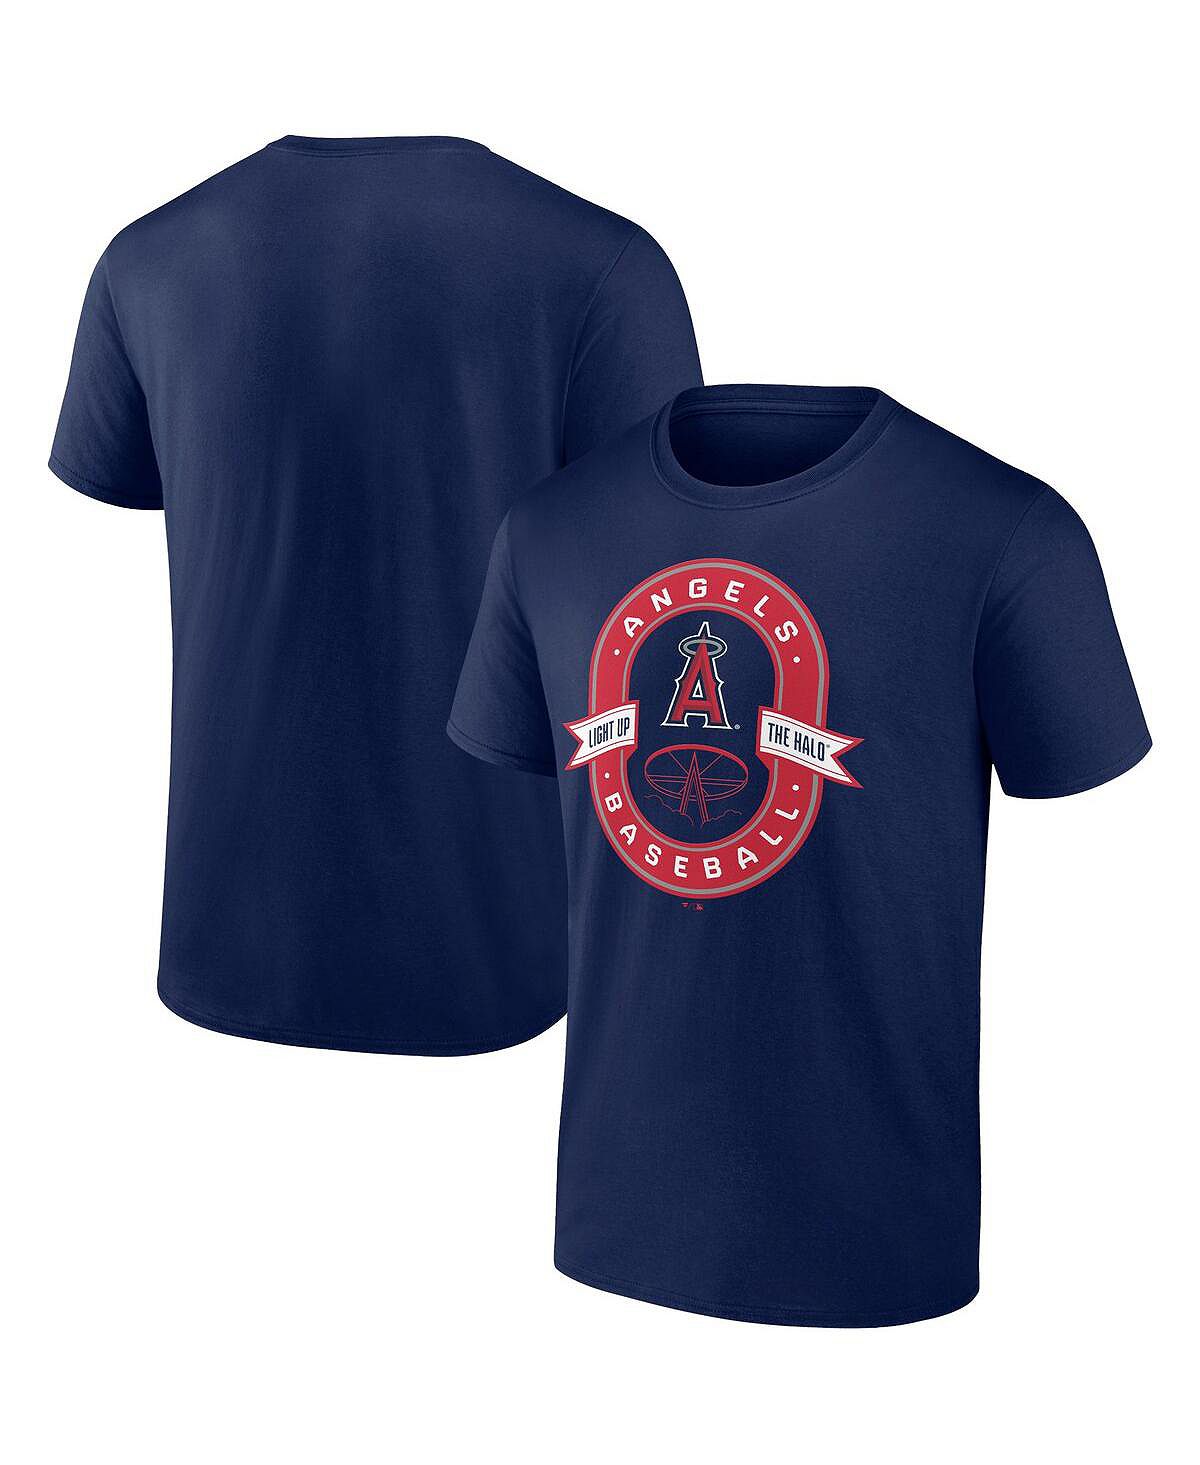 Мужская темно-синяя футболка с логотипом Los Angeles Angels Iconic Glory Bound Fanatics